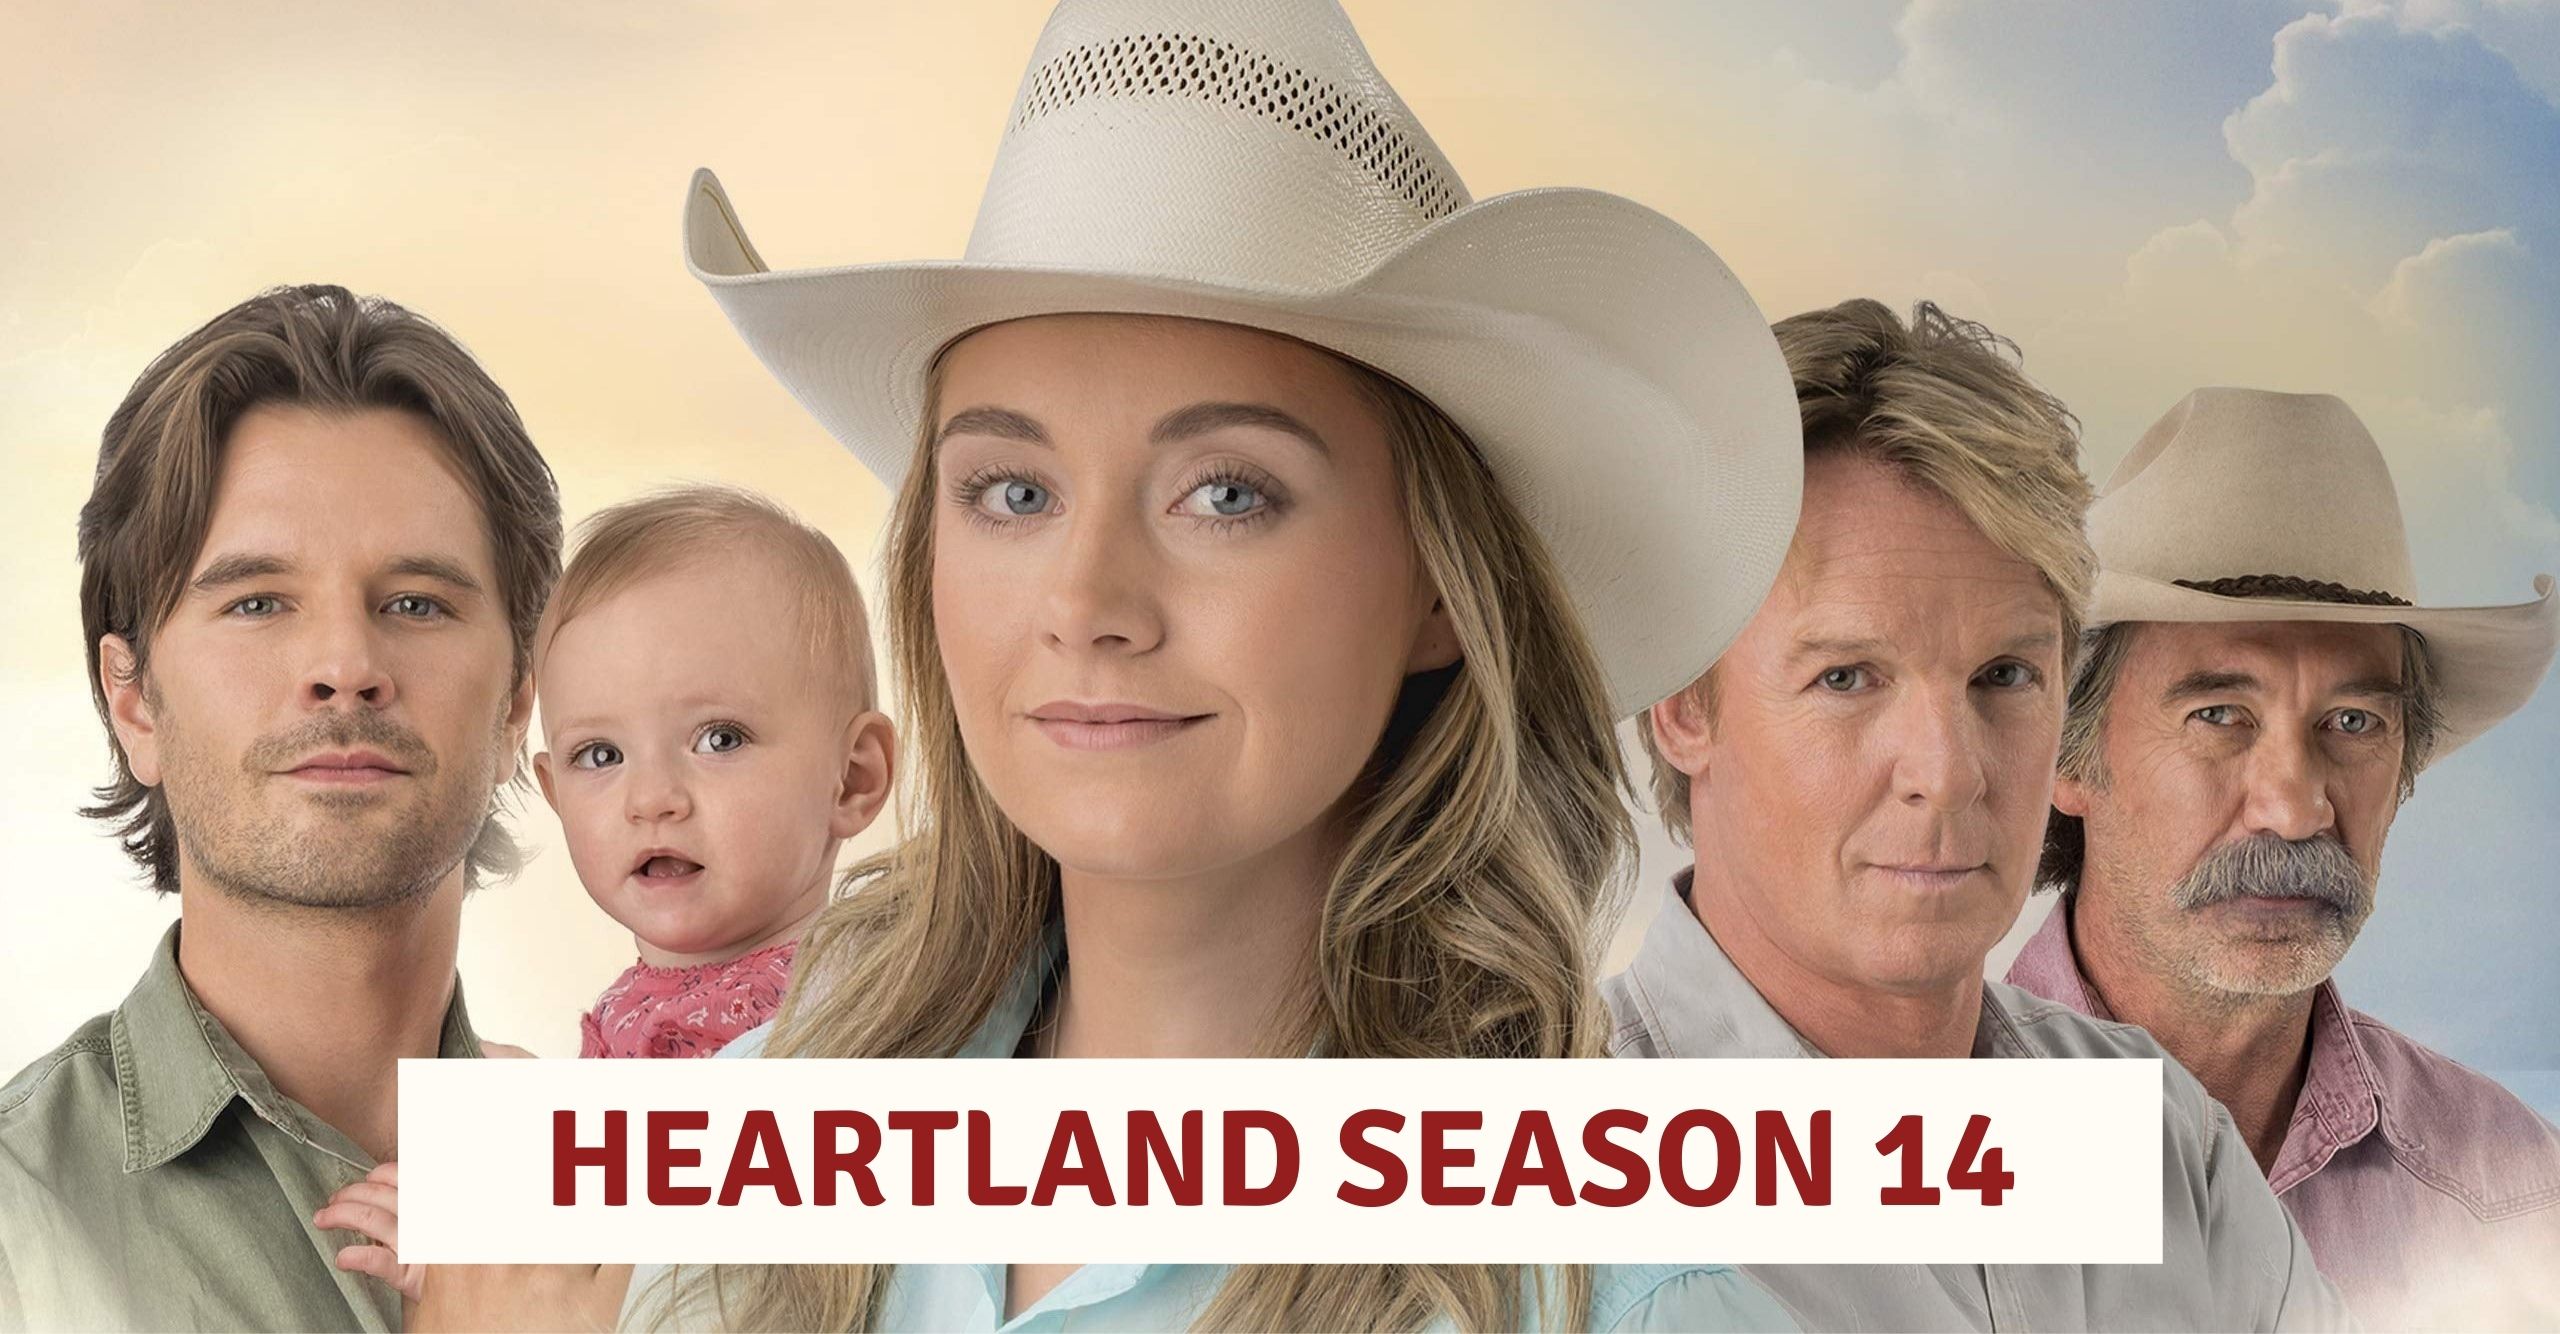 Heartland Season 14 Episodes